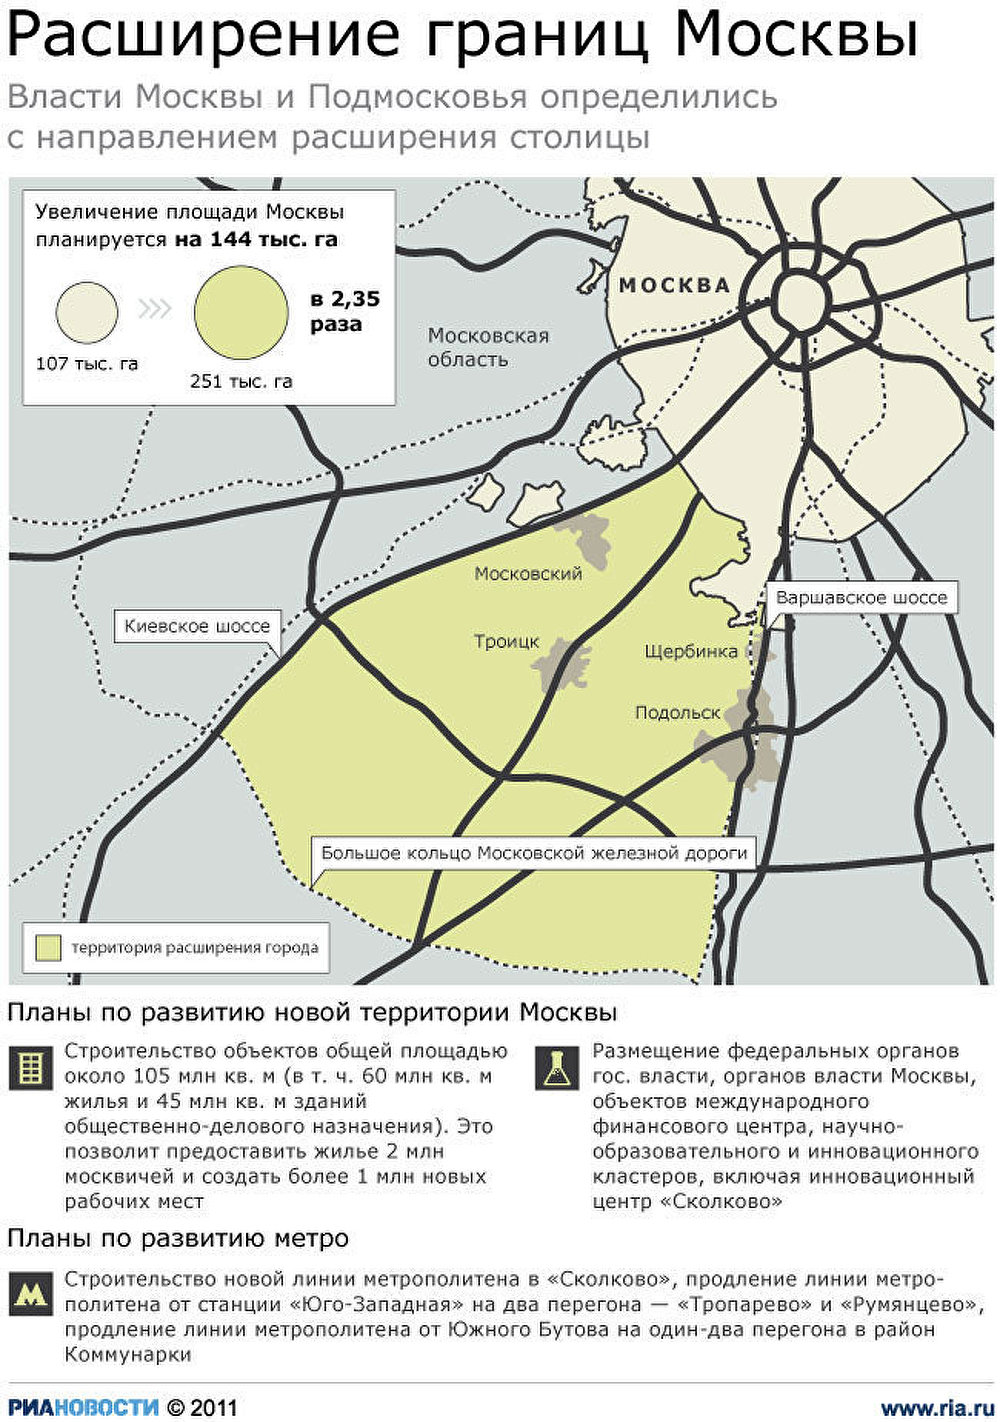 Расширение границ Москвы